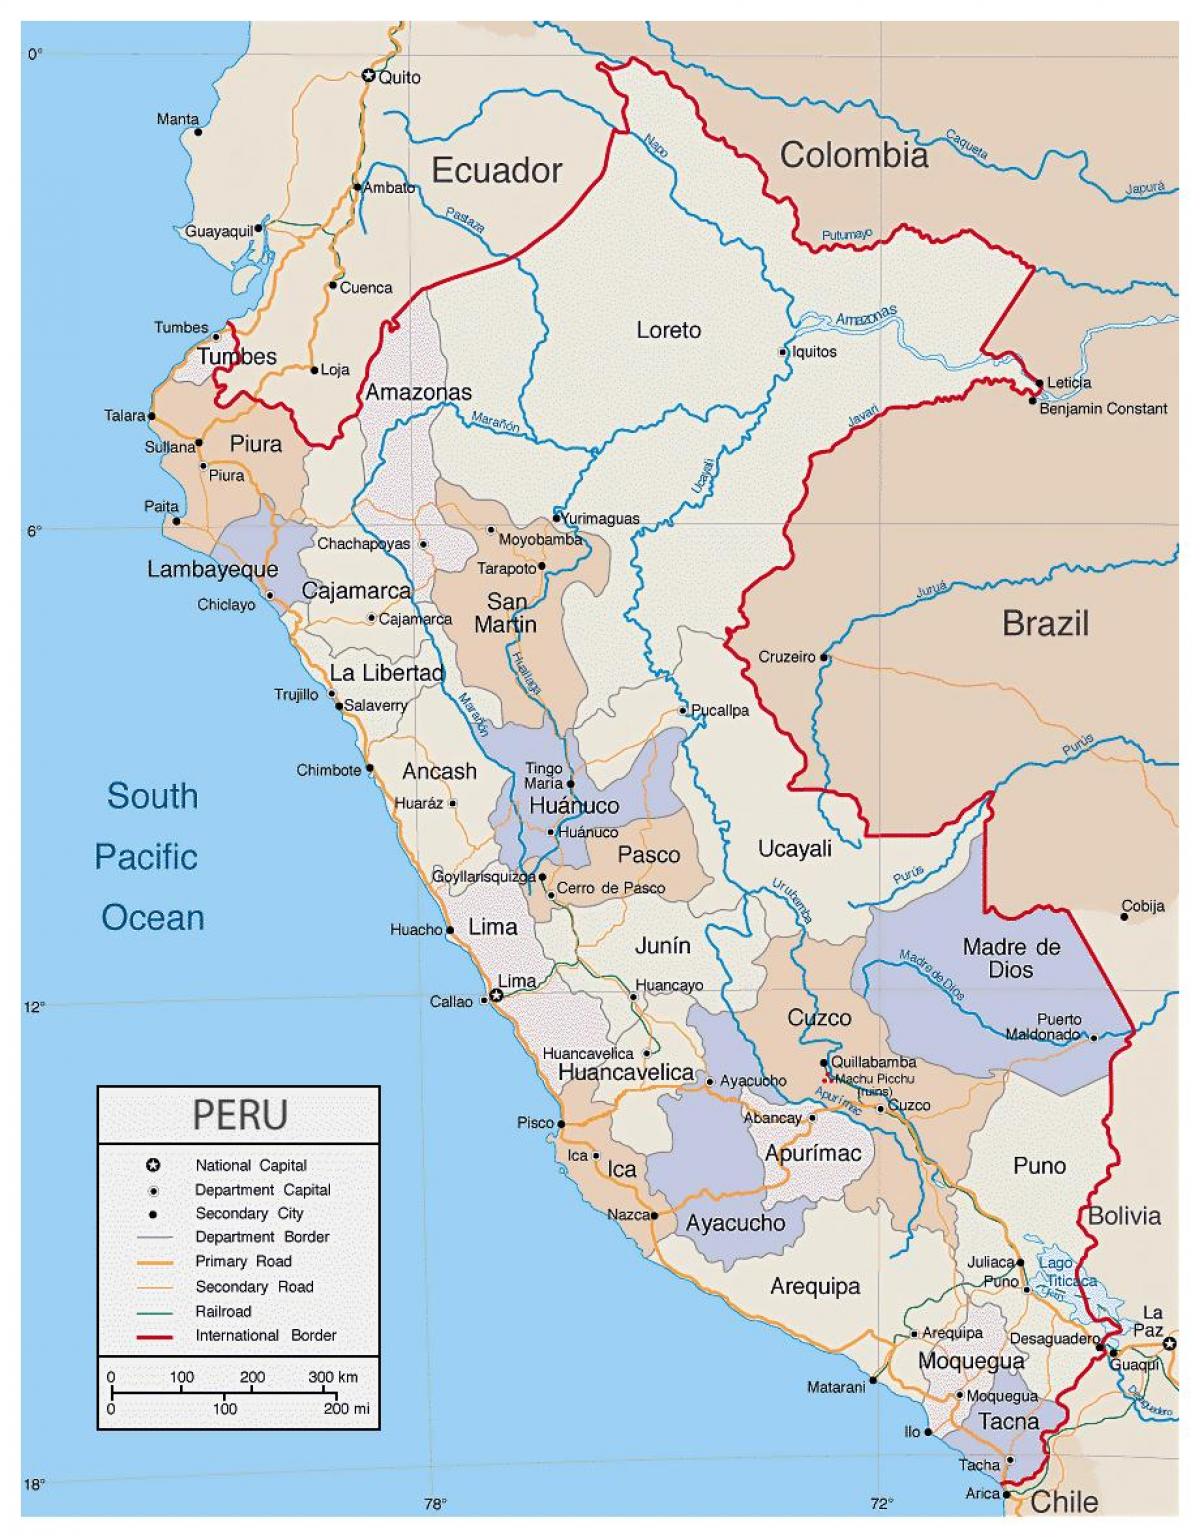 mapa da mapa detalhado do Peru